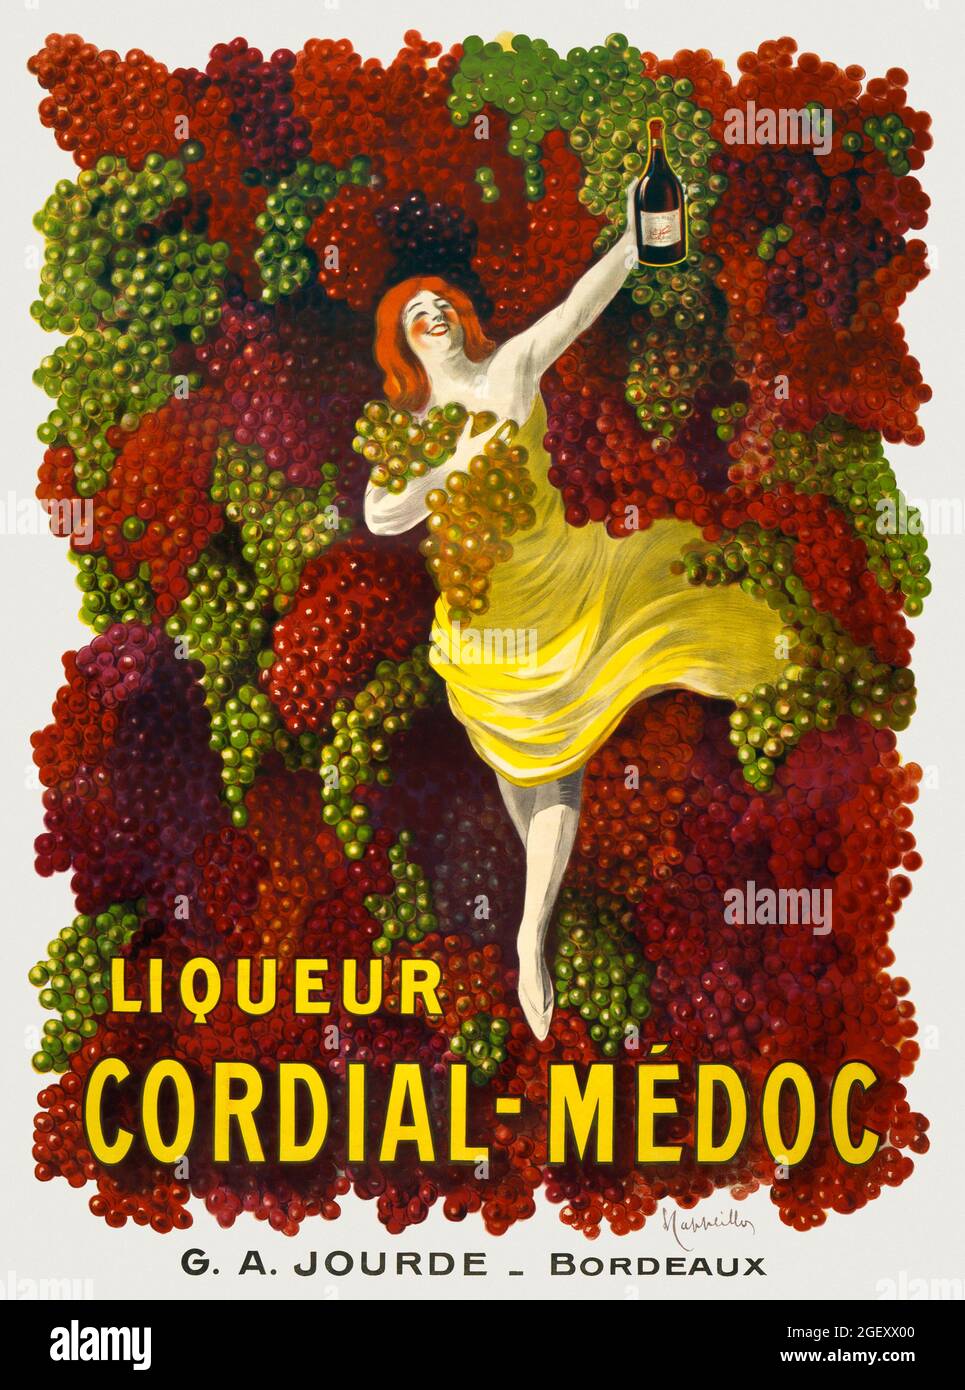 Liquer Cordial-Médoc, G. A. JOURDE - Bordeaux (1907) stampa ad alta risoluzione di Leonetto Cappiello. Art Nouveau. Foto Stock